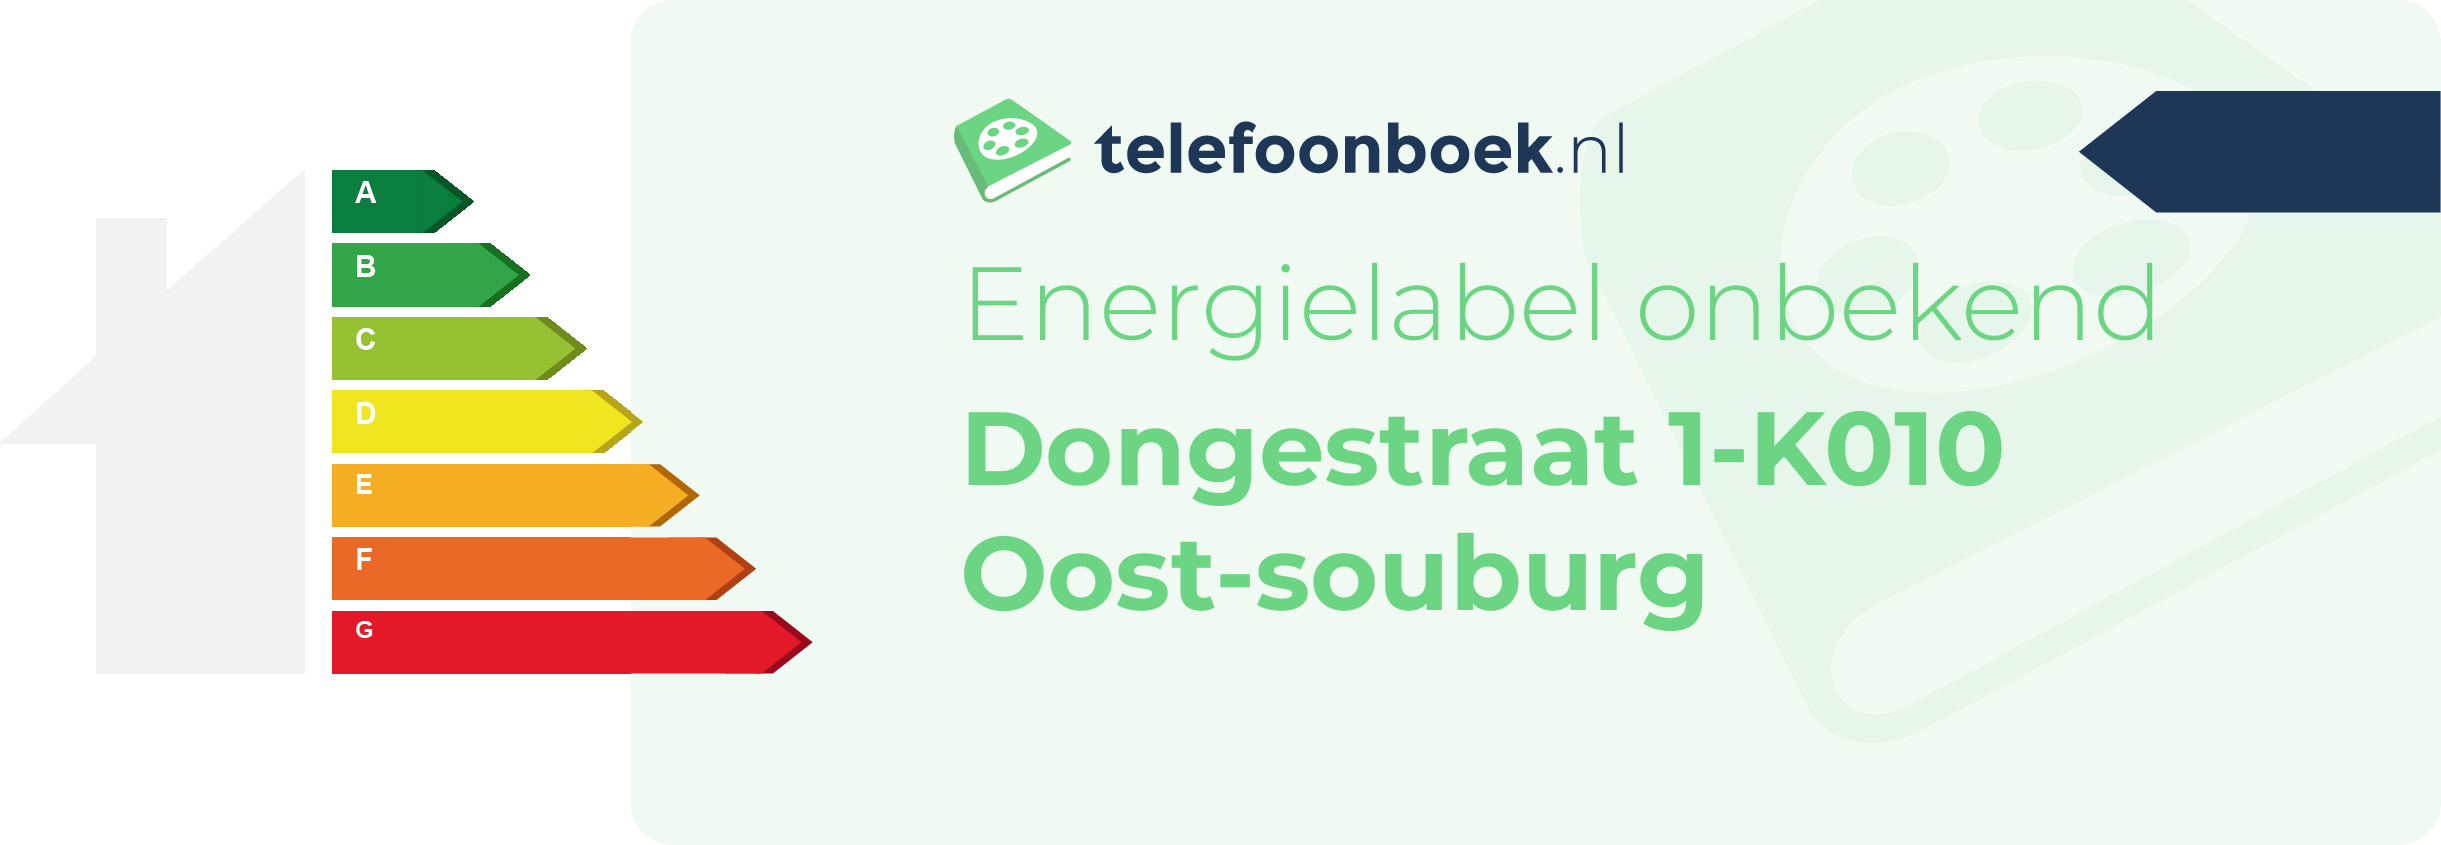 Energielabel Dongestraat 1-K010 Oost-Souburg